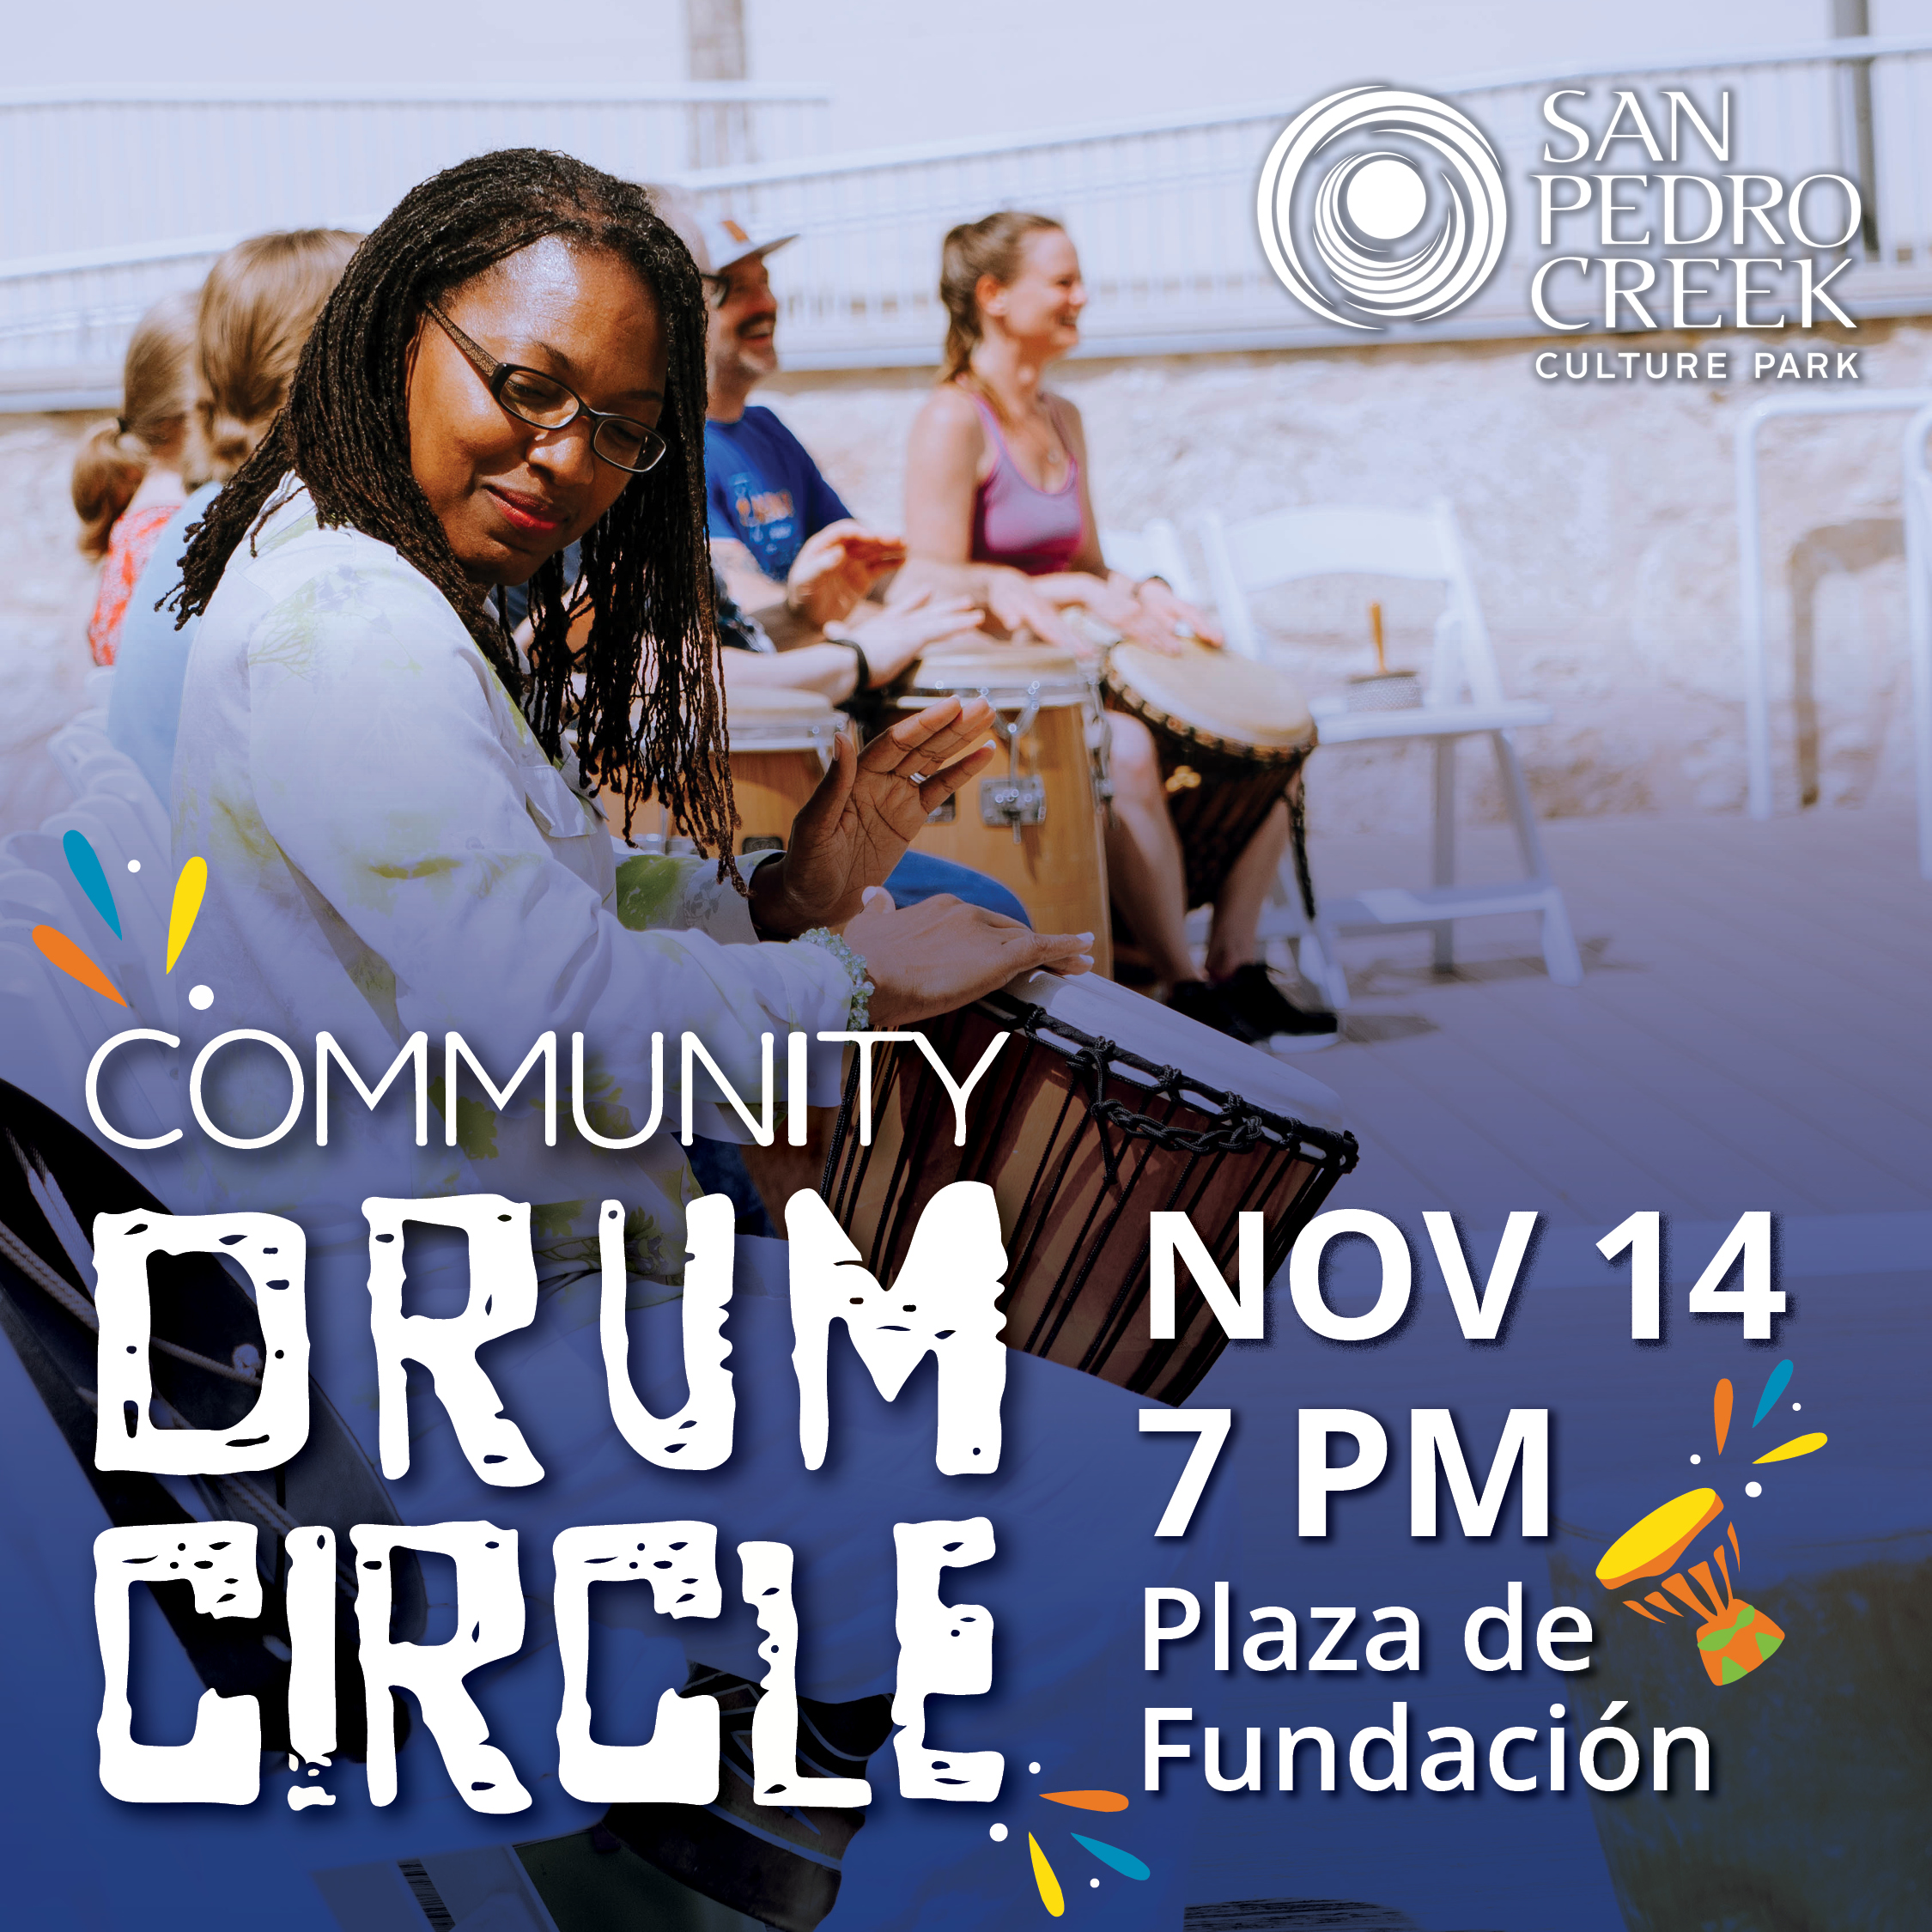 Community Drum Circle, Tuesday, November 14 at 7 PM.